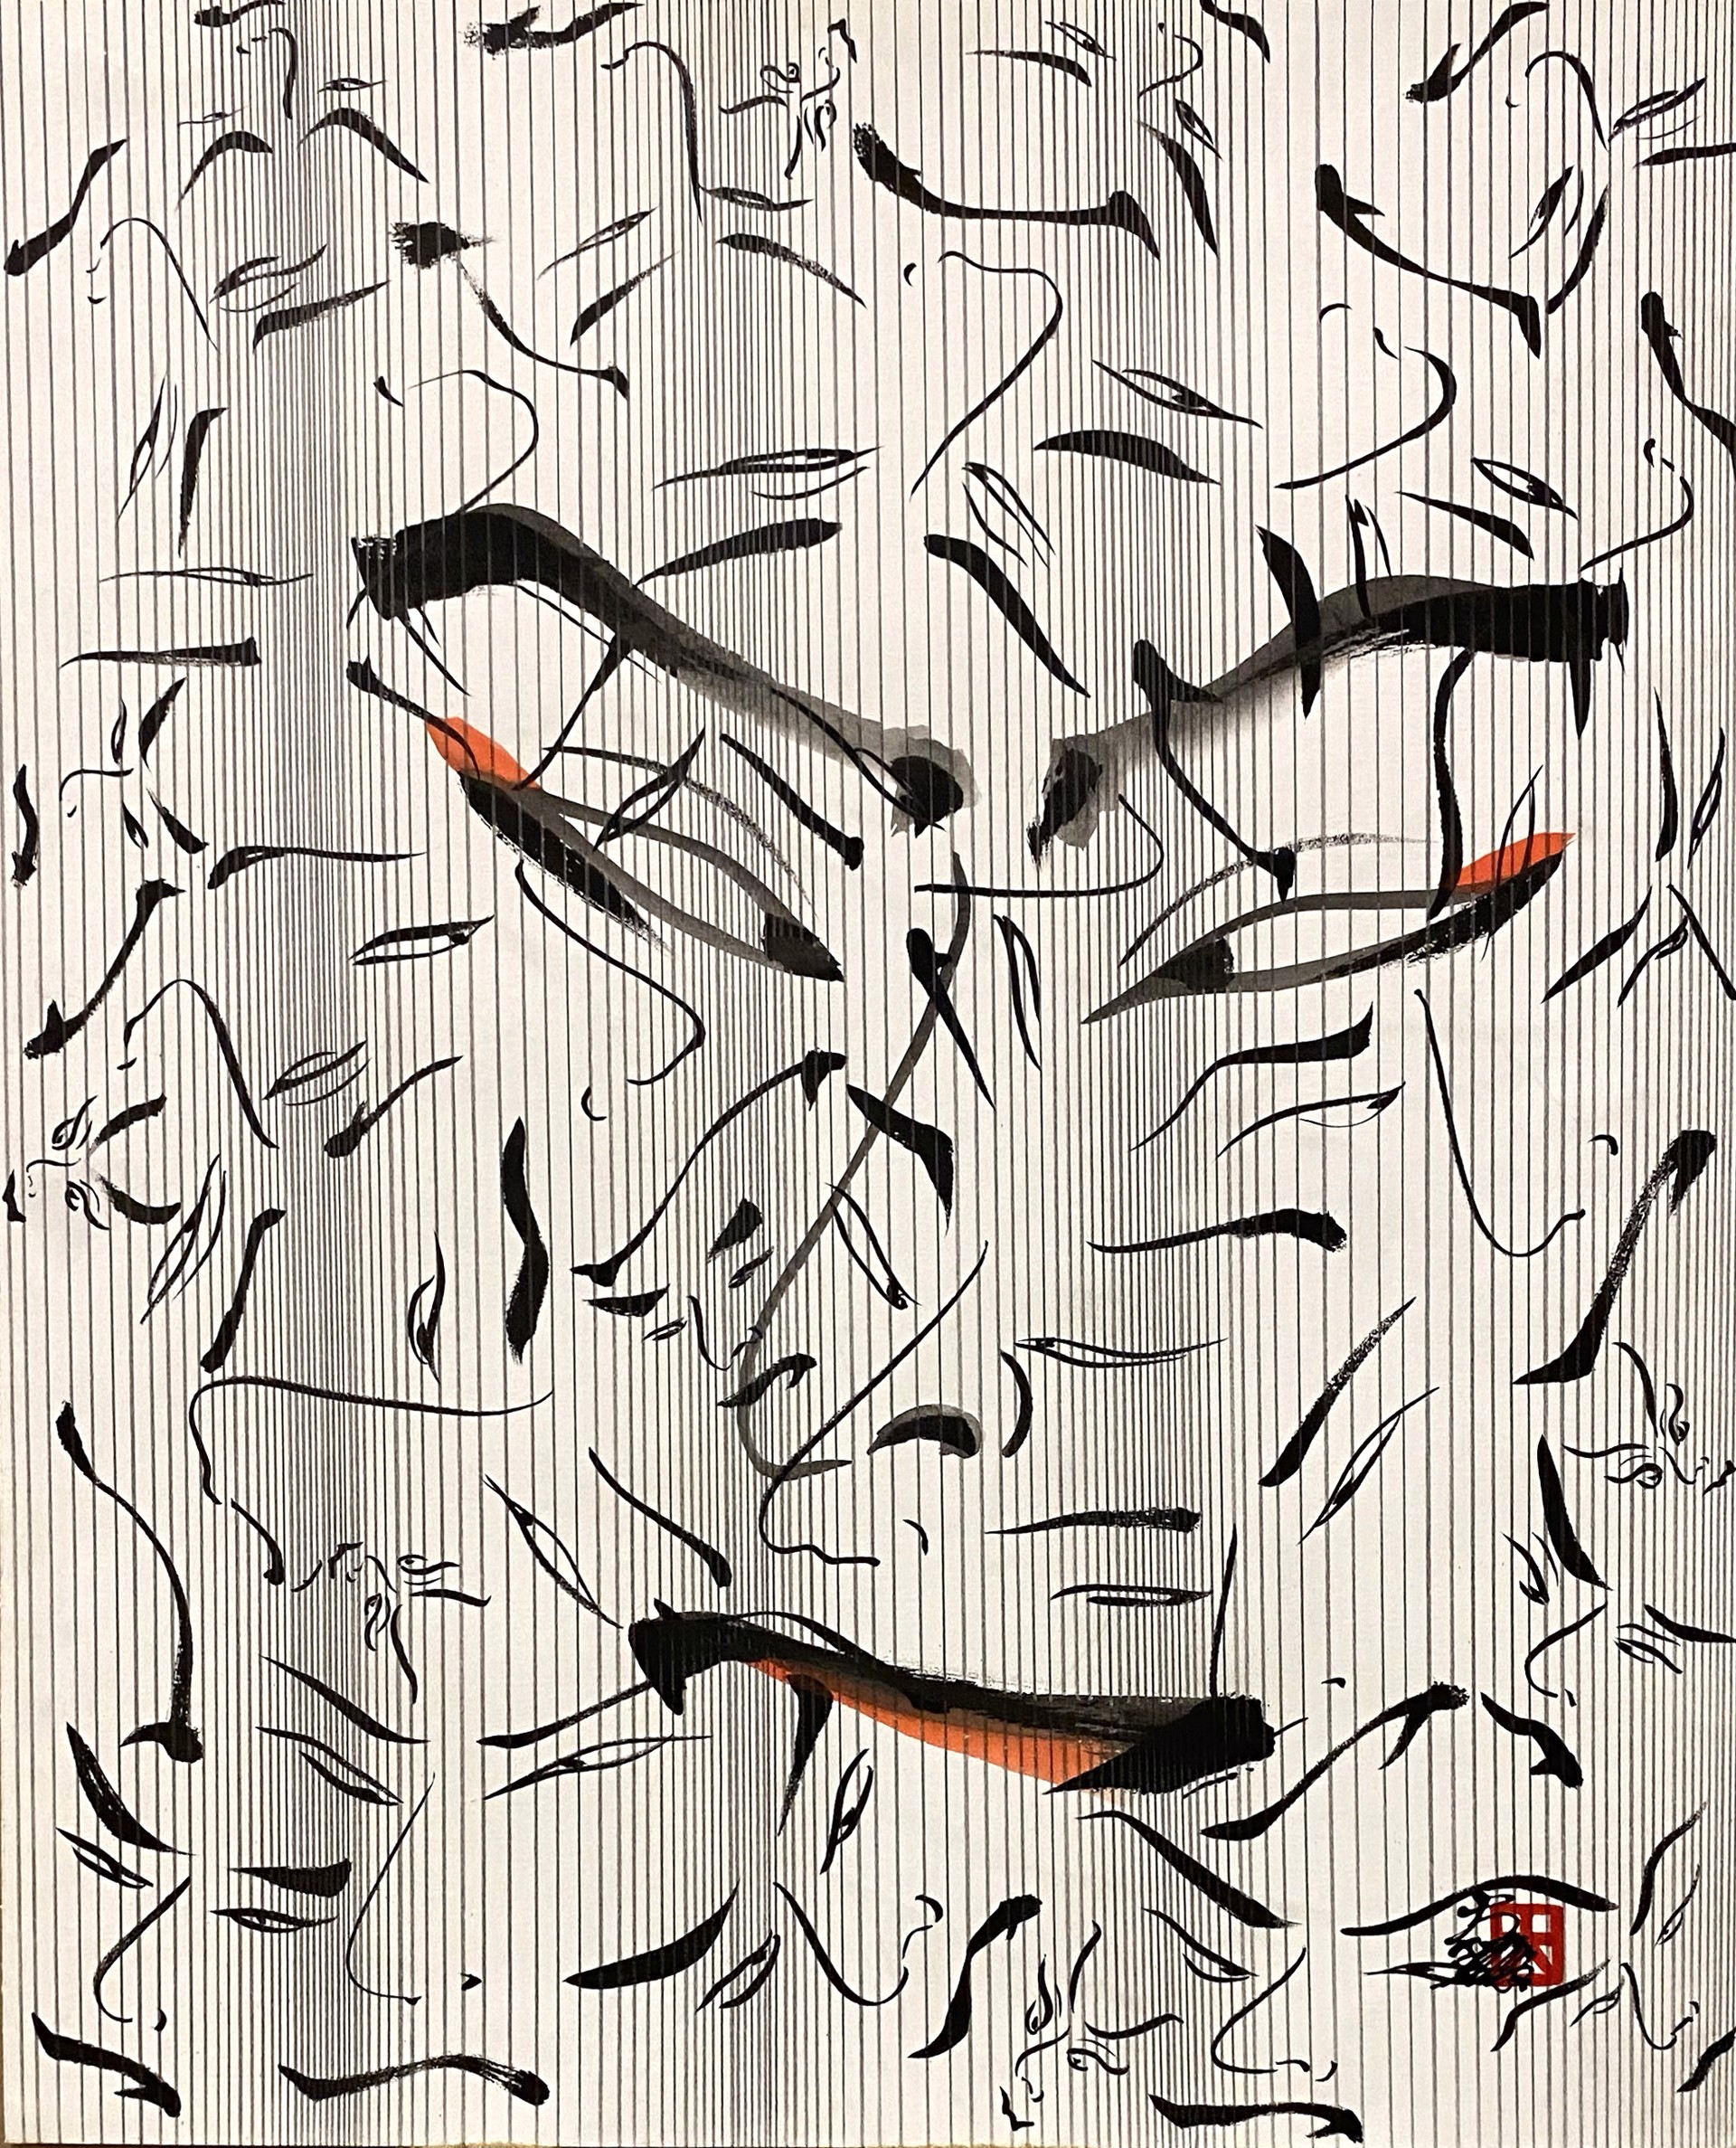 Kabuki Faces (Large w/Lines) by Hisashi Otsuka